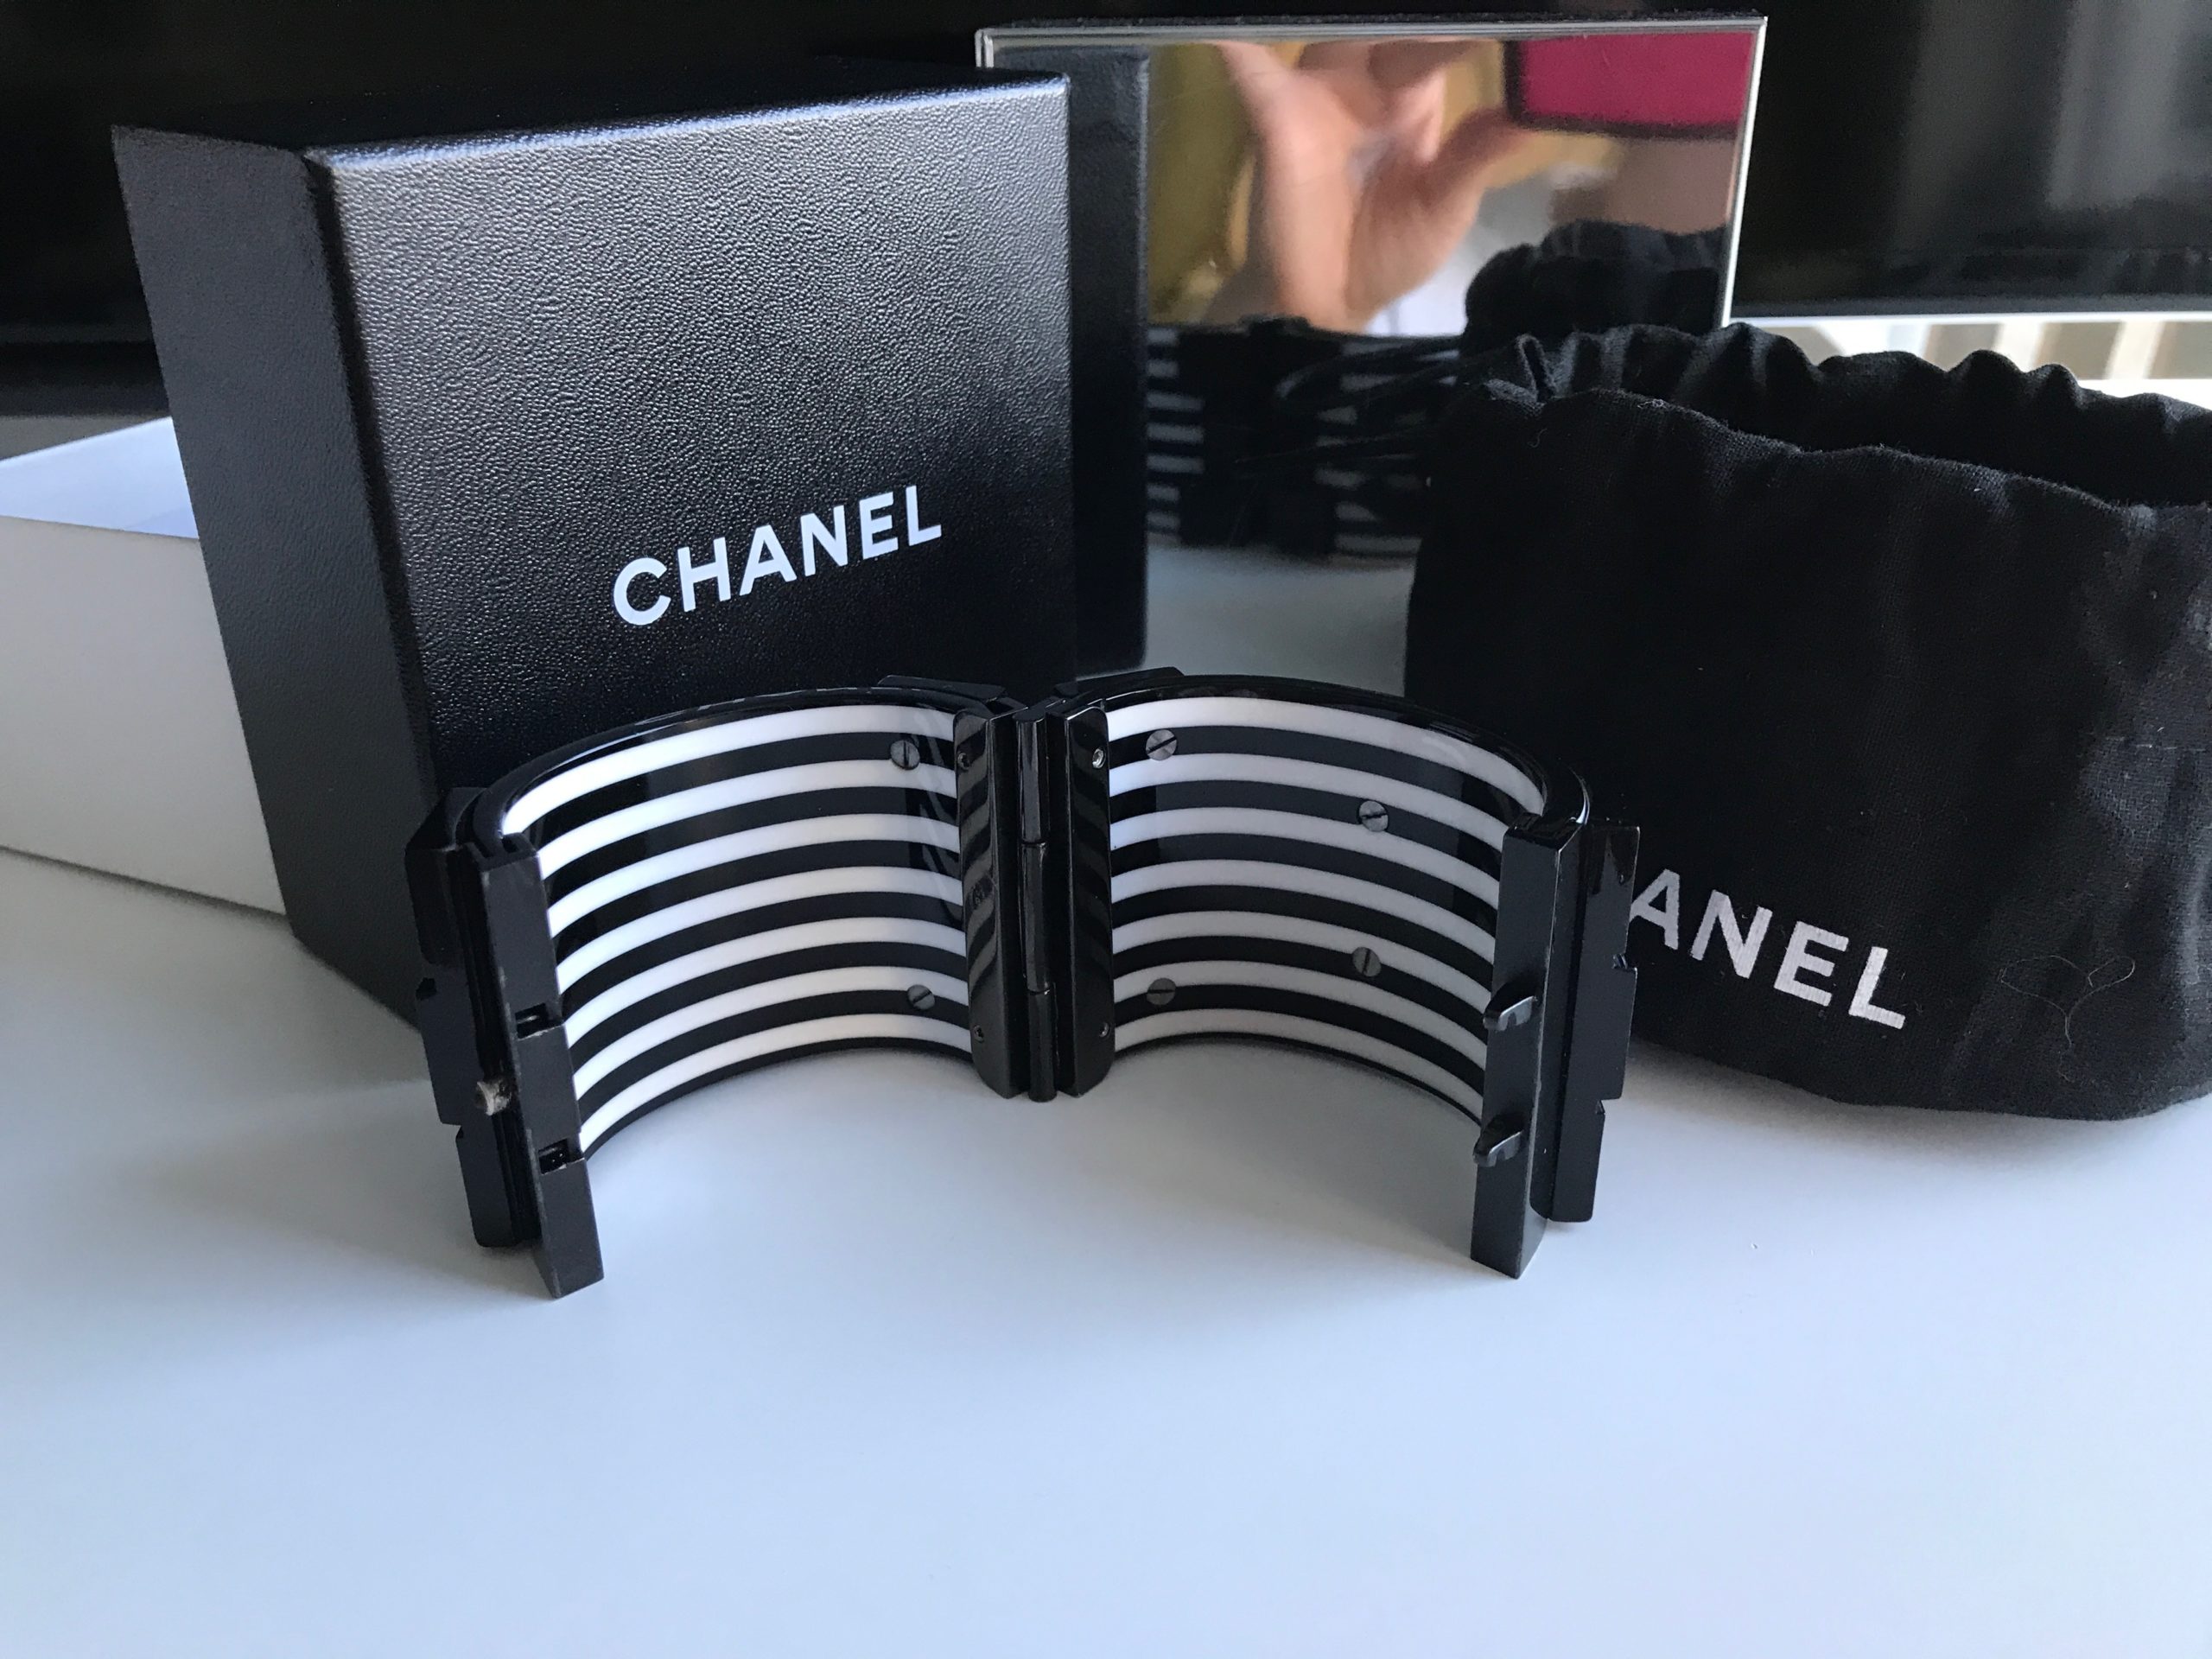 Chanel cuff bracelet | Chanel cuff, Chanel cuff bracelet, Cuff bracelet